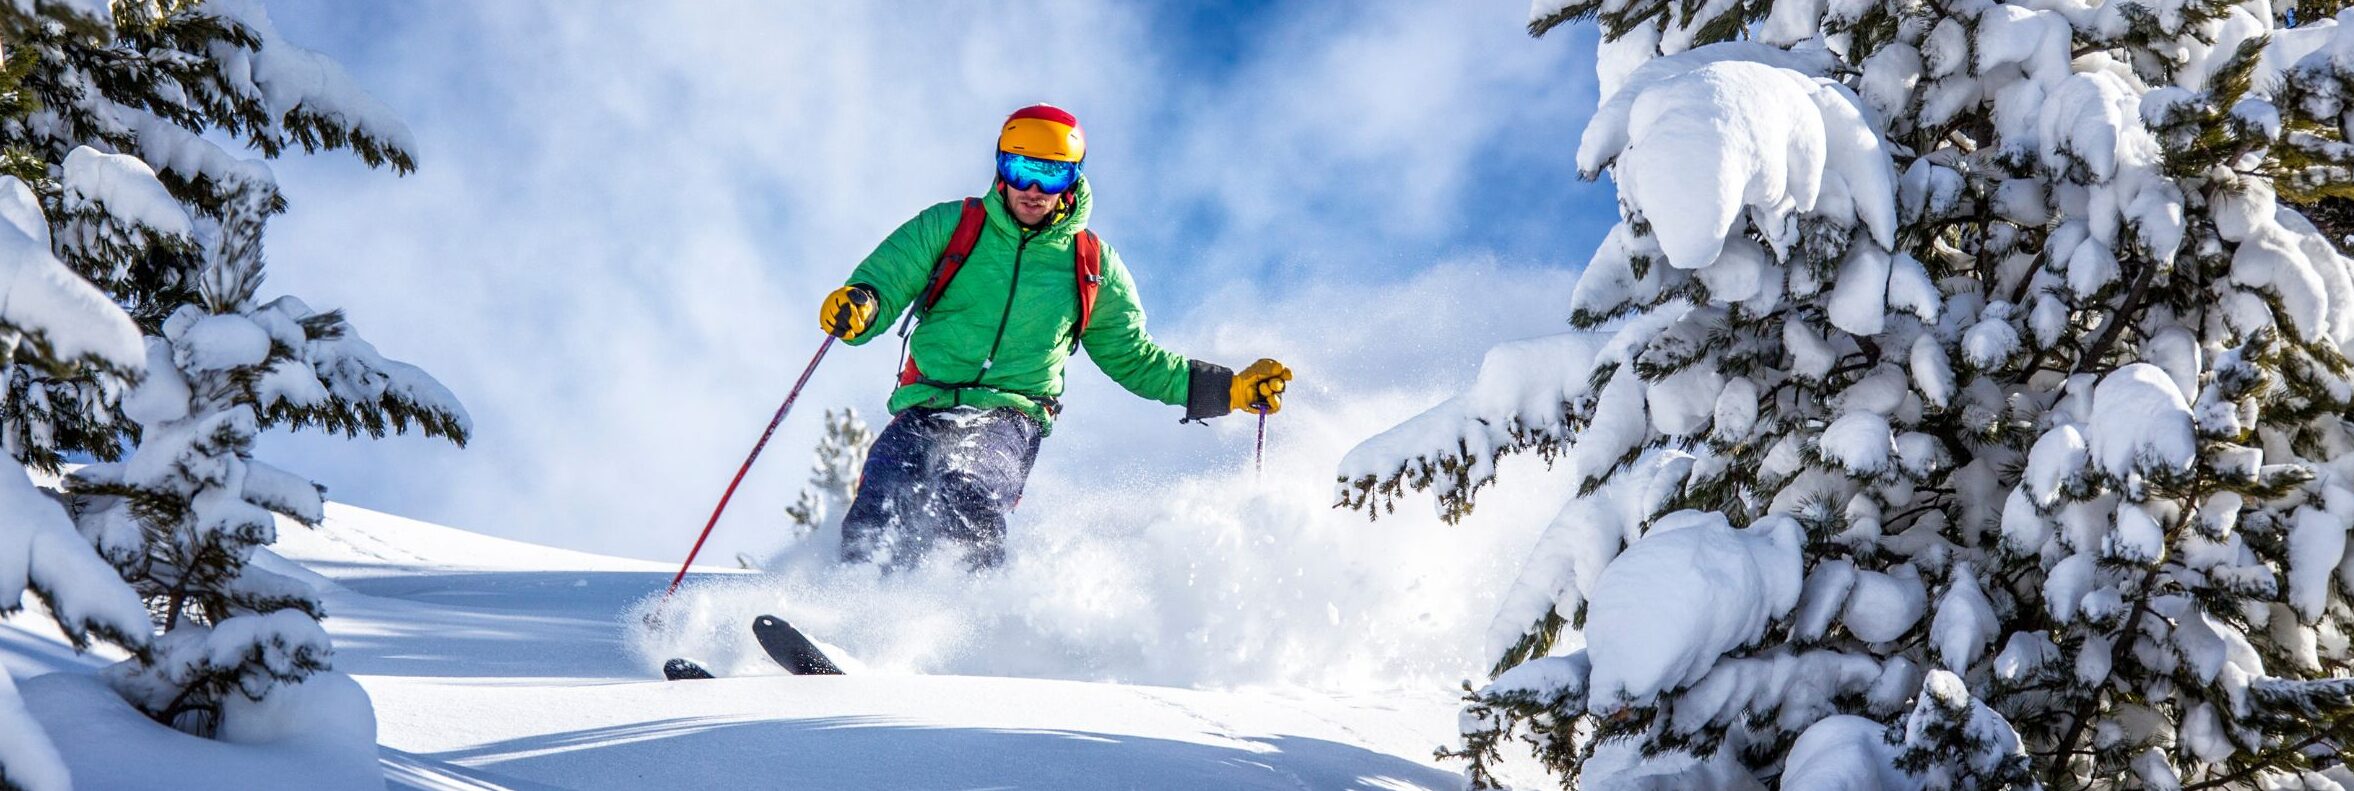 plan your dream ski trip